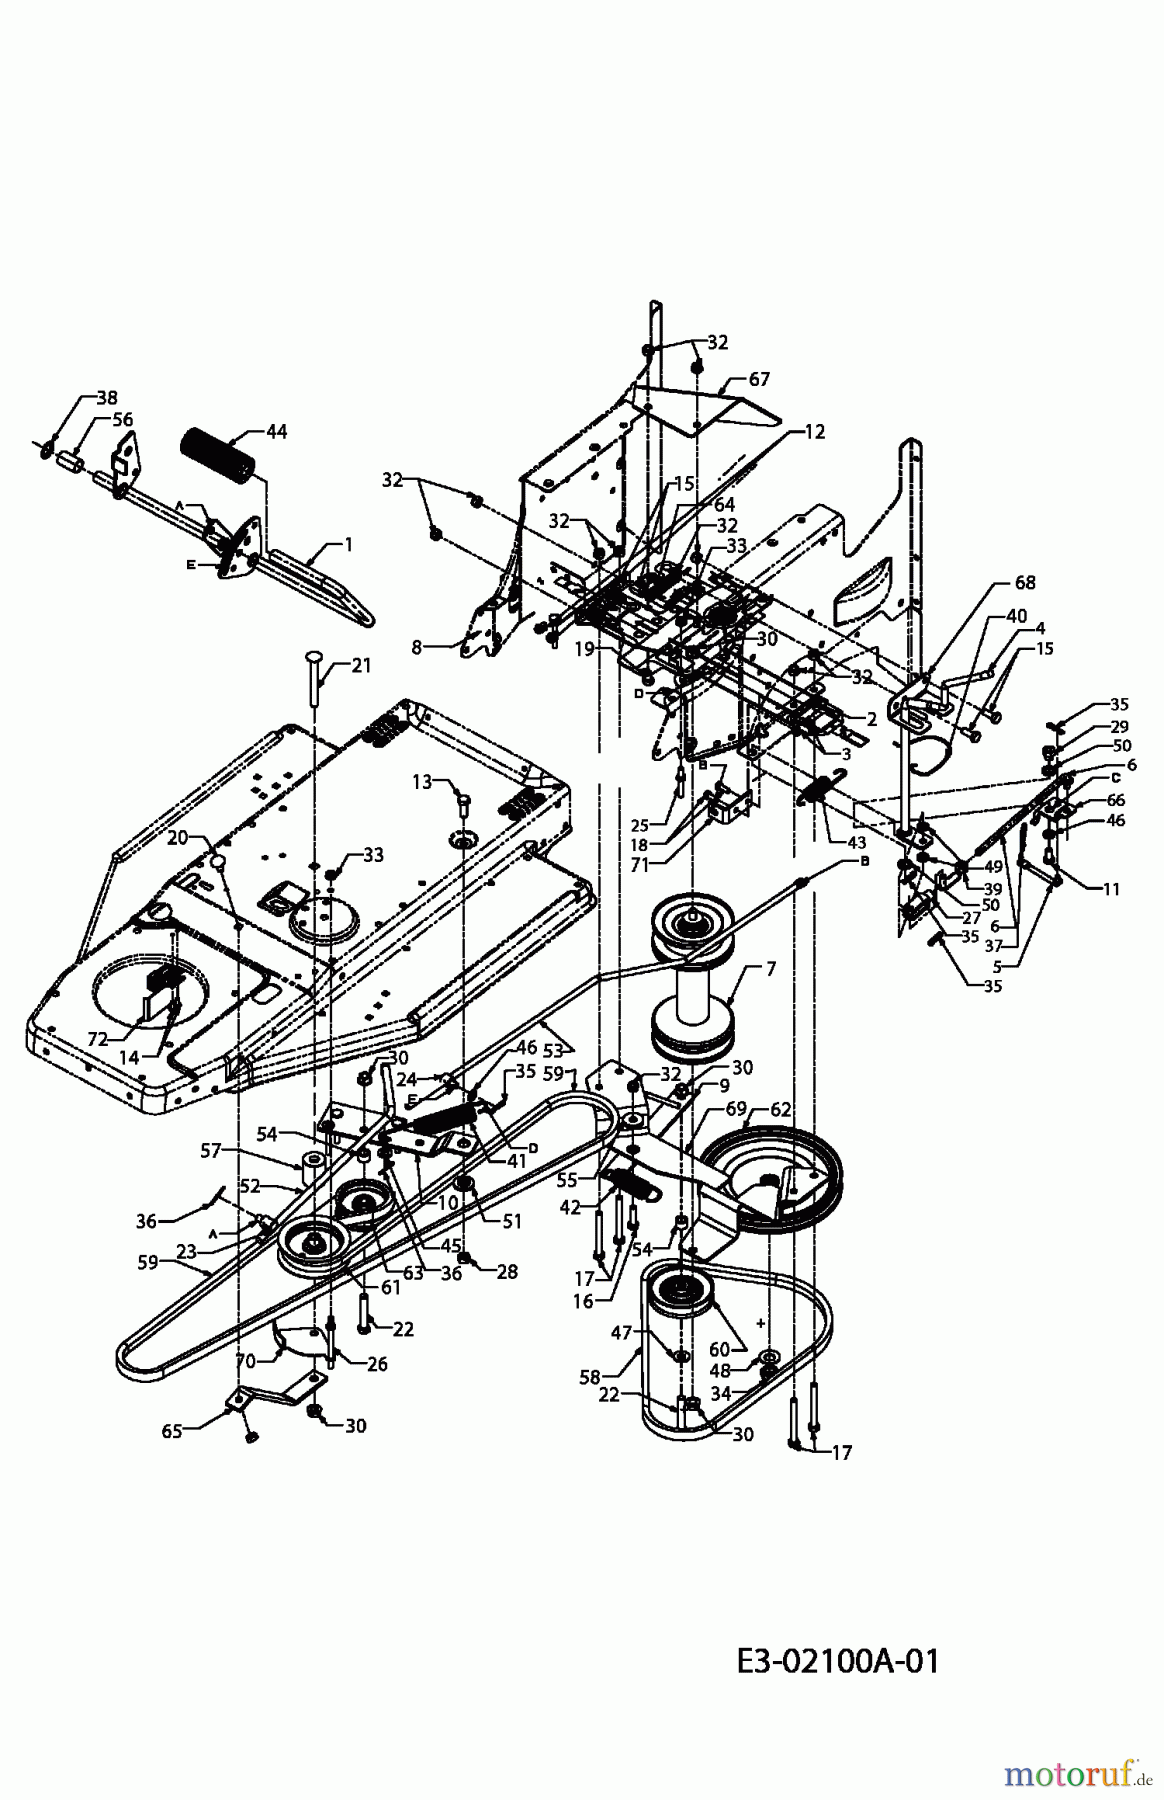  MTD ältere Modelle Rasentraktoren RH 155/92 13DA450E600  (2004) Fahrantrieb, Pedale